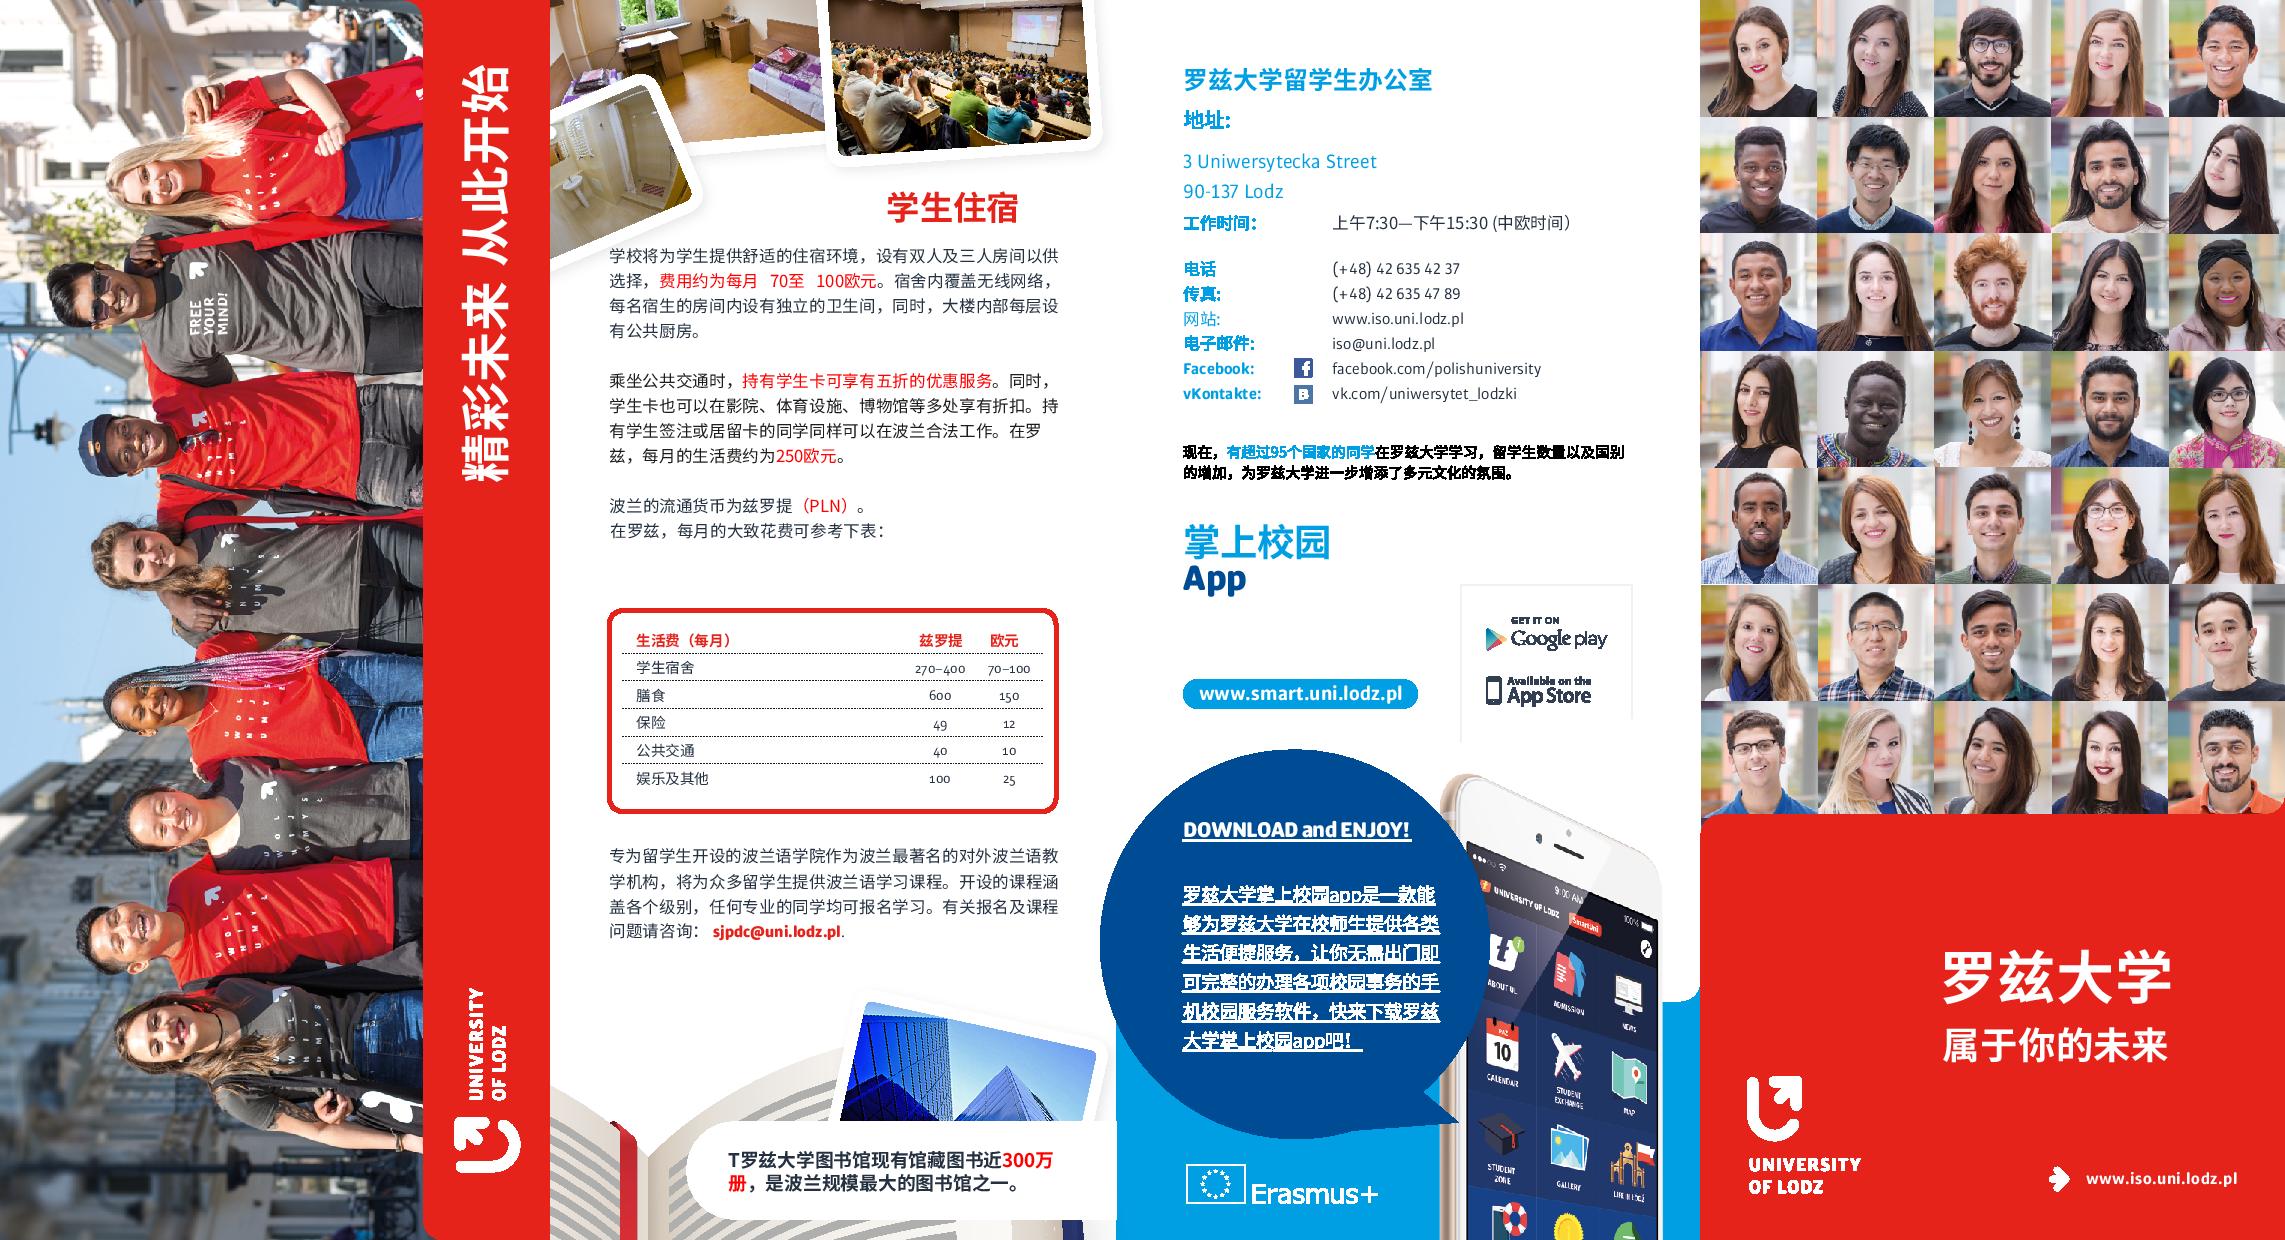 Ulotka o studiach na Uniwersytecie Łódzkim w języku chińskim/Leaflet about studying at the University of Lodz in Chinese